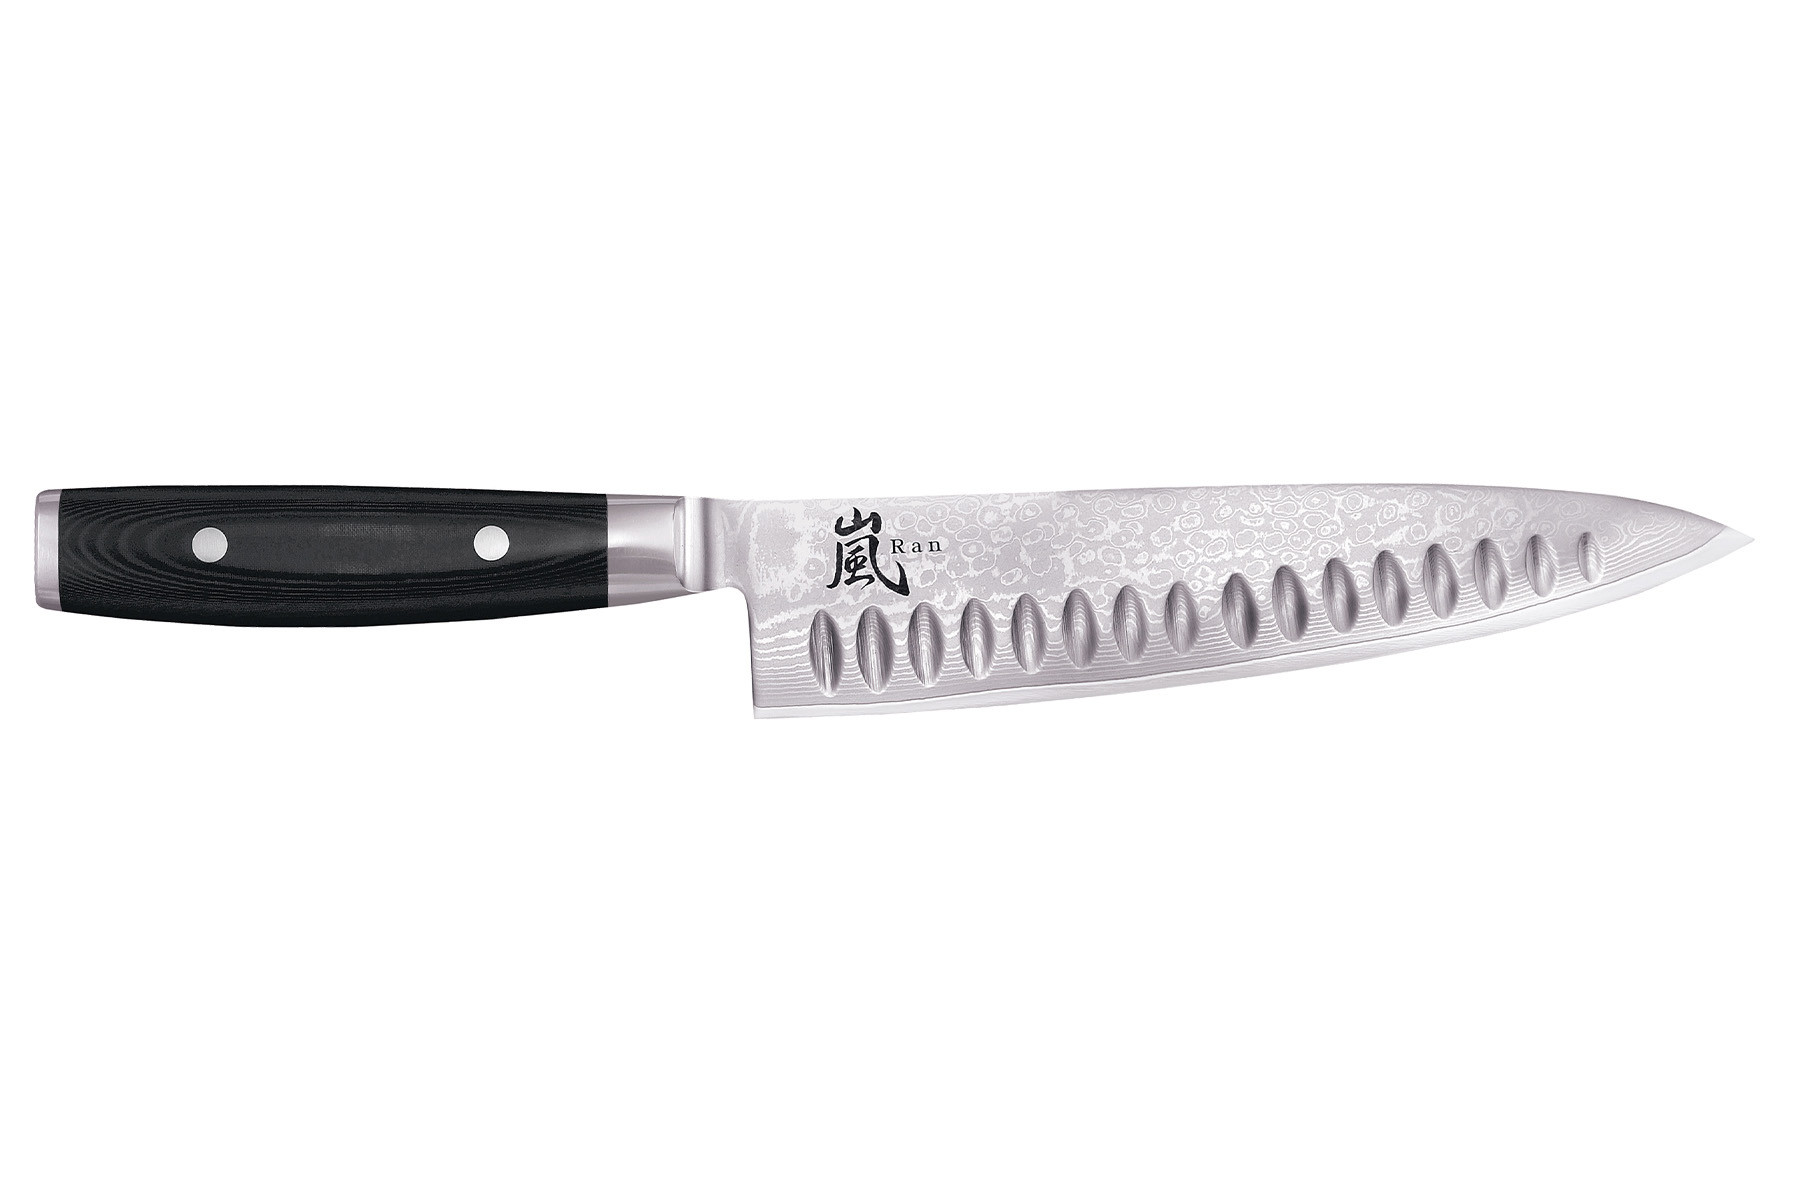 Couteau japonais Yaxell "Ran" - Couteau de chef lame alvéolée 20 cm